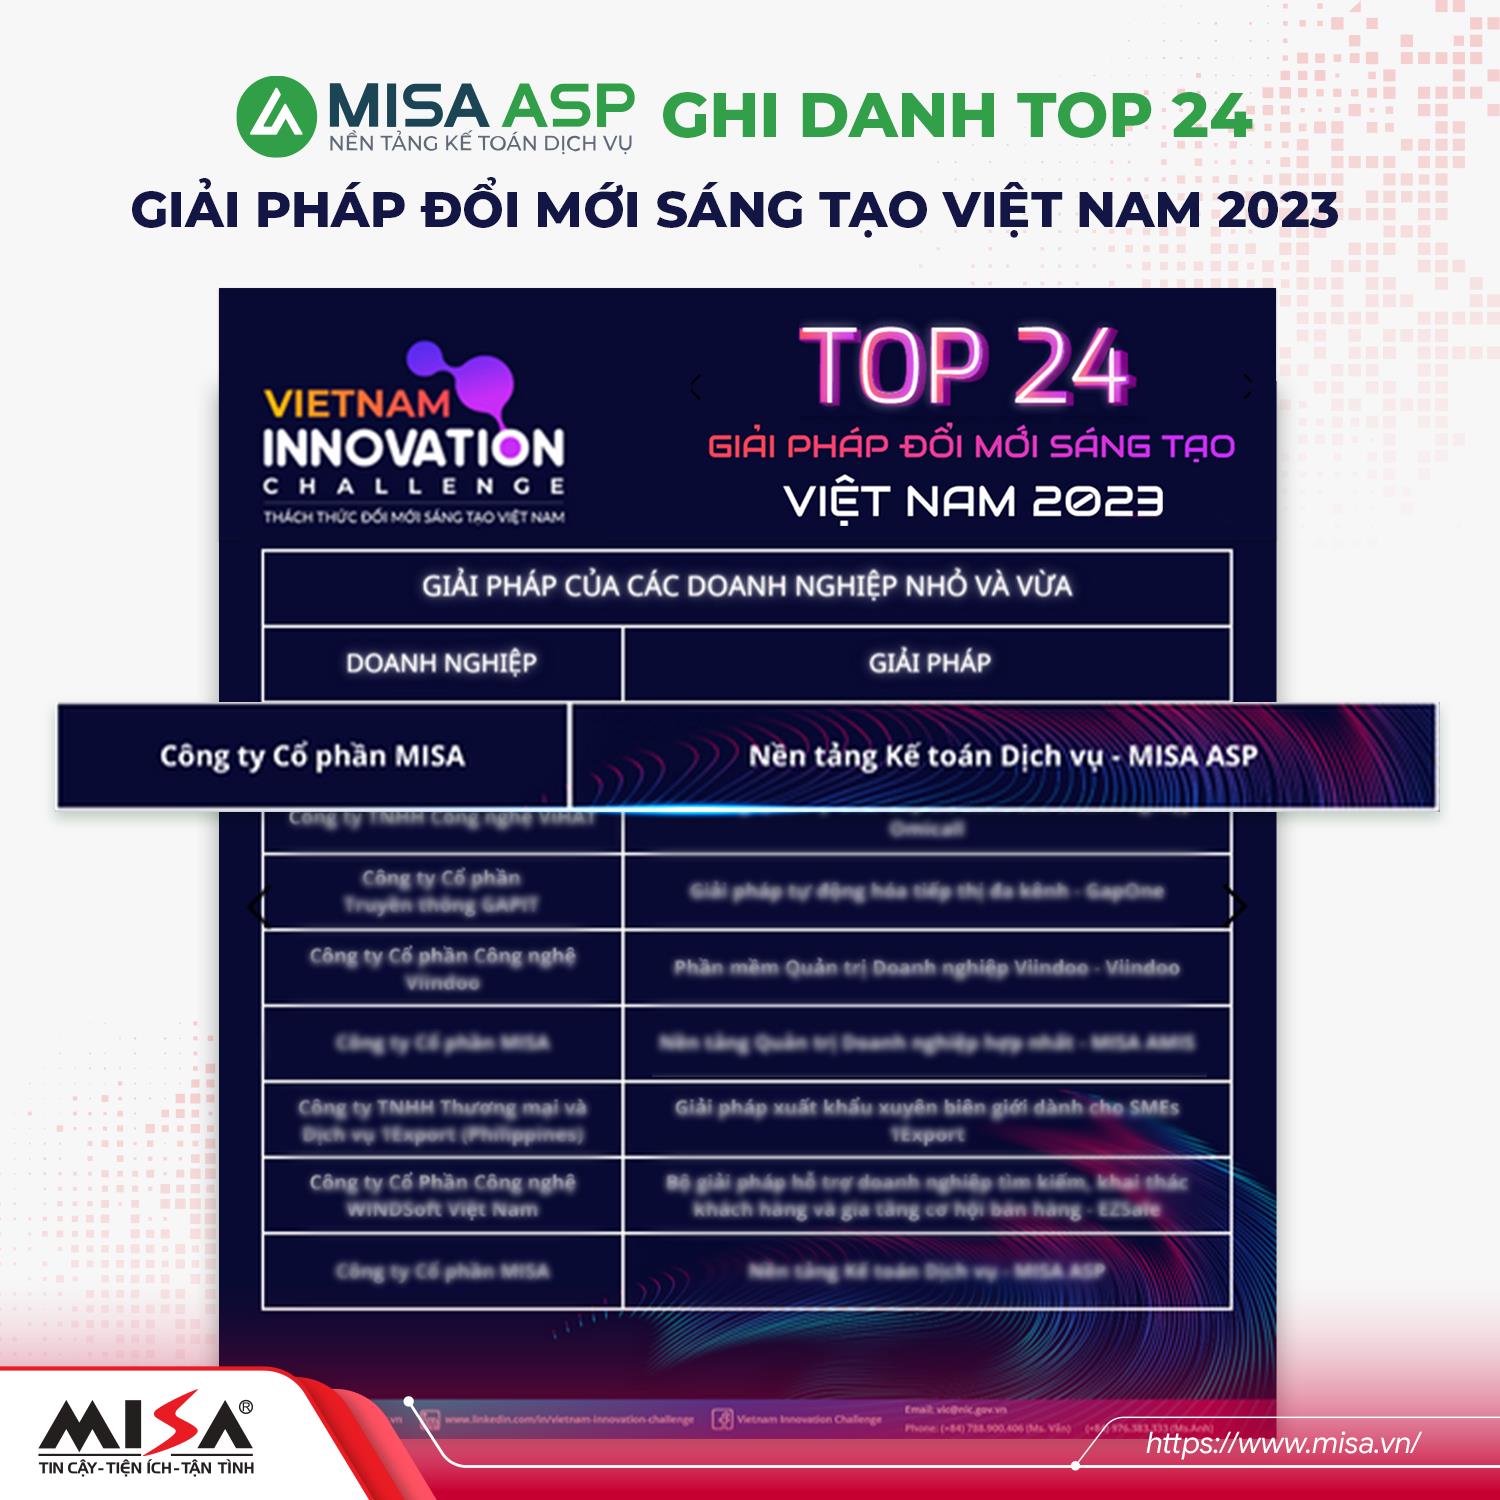 MISA AMIS vinh dự là 1 trong 4 Giải pháp đổi mới sáng tạo xuất sắc nhất Việt Nam 2023 - Ảnh 4.